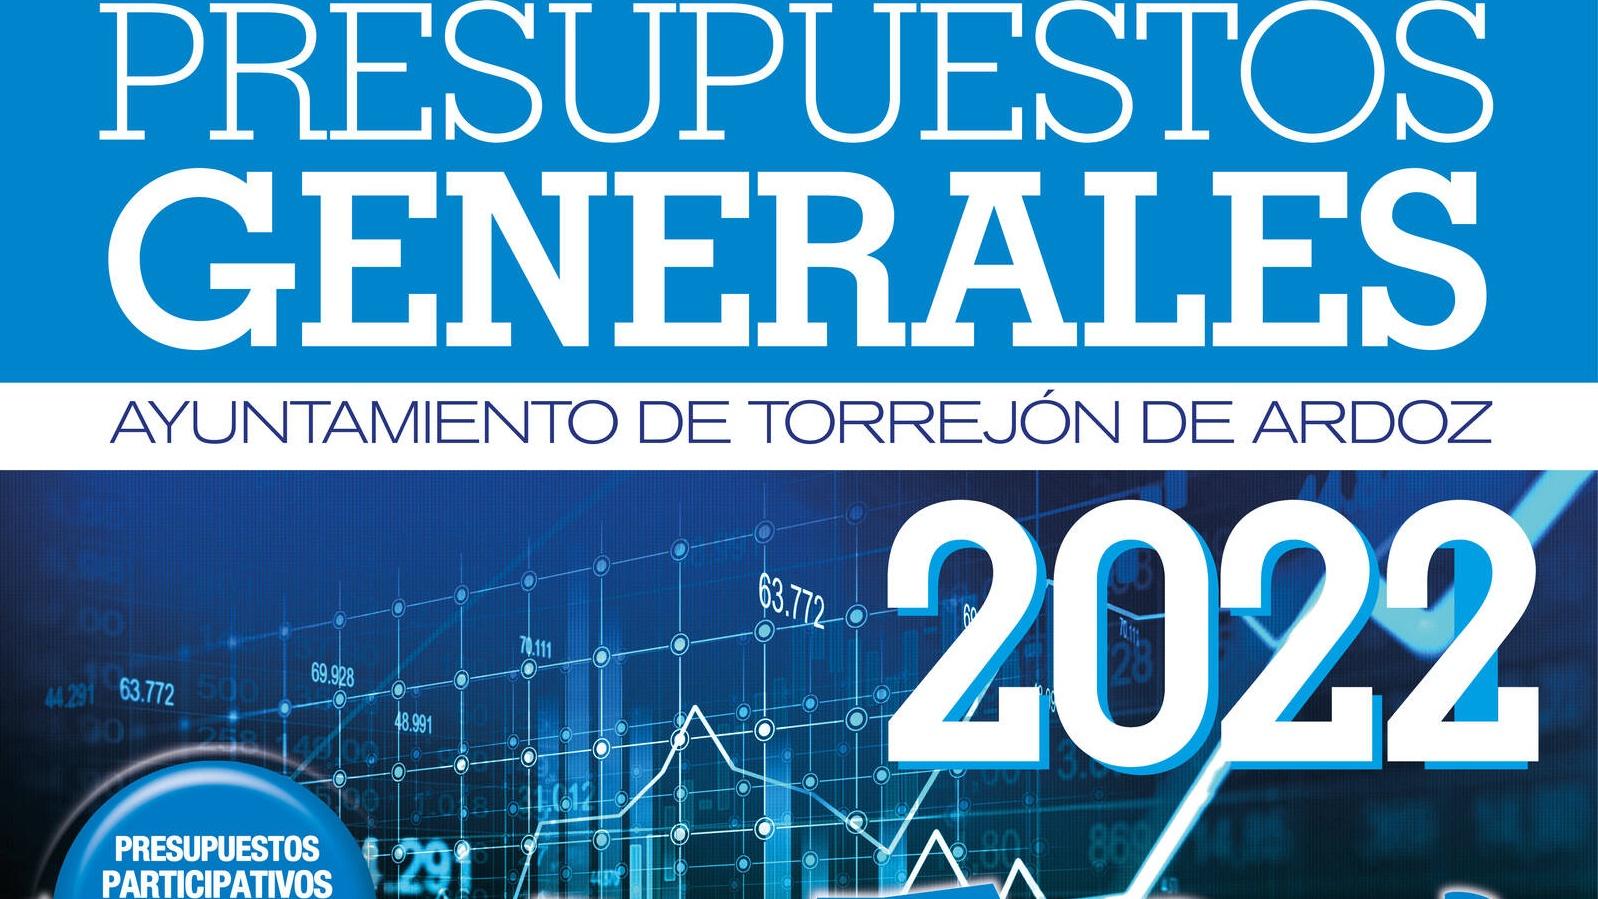 Aprobados inicialmente los Presupuestos del Ayuntamiento de Torrejón de Ardoz para 2022